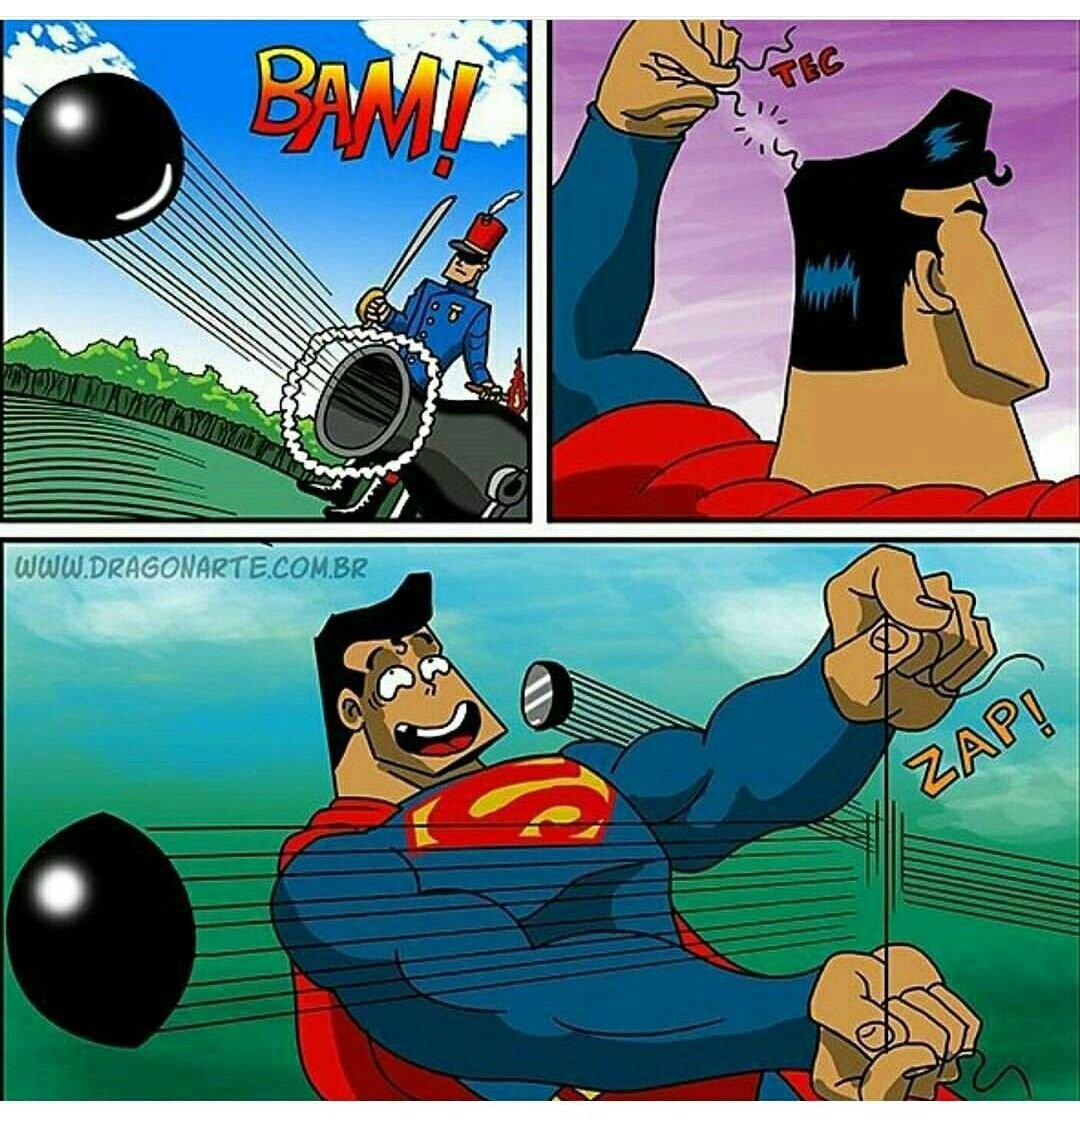 Бэтмен и Супермен комиксы драгонарте